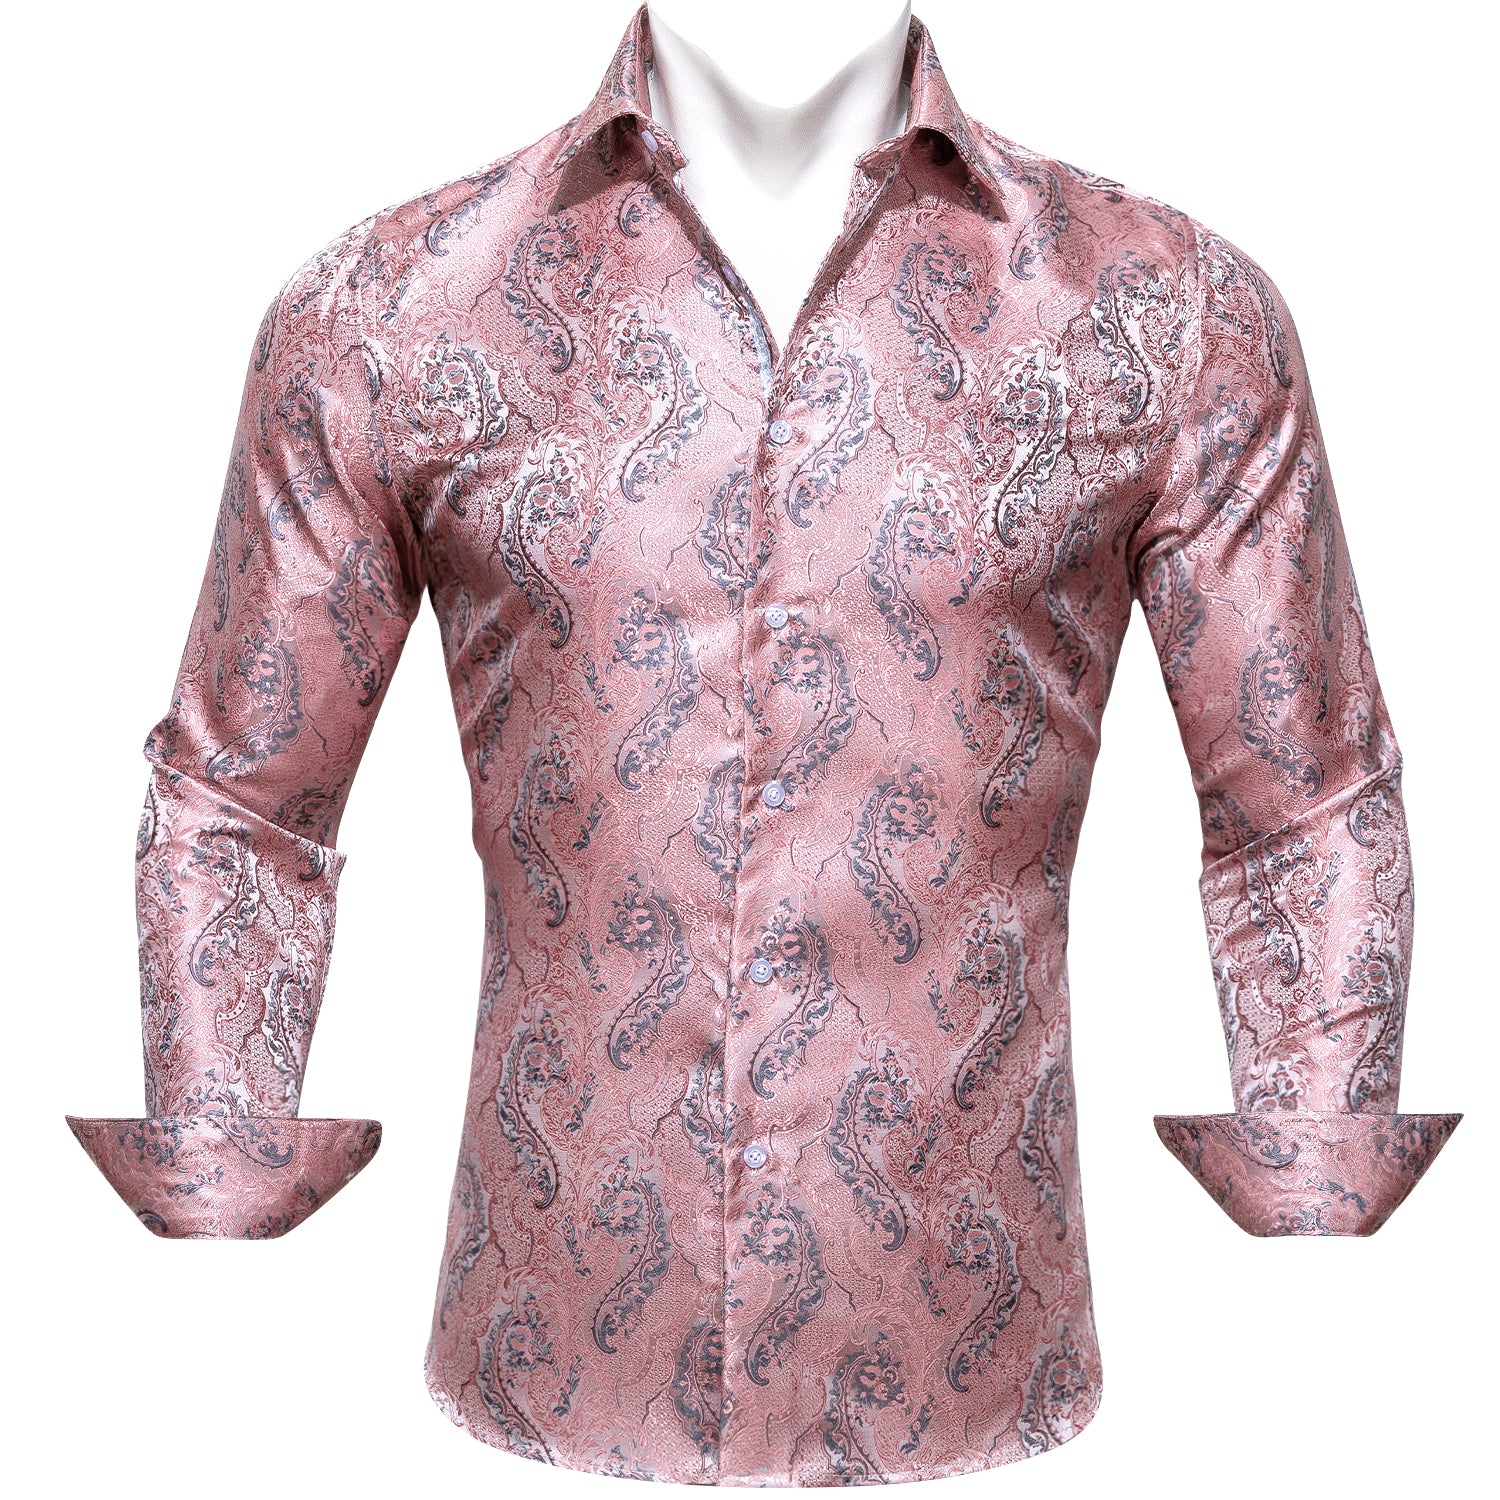 Barry.wang Pink Silver Floral Silk Shirt